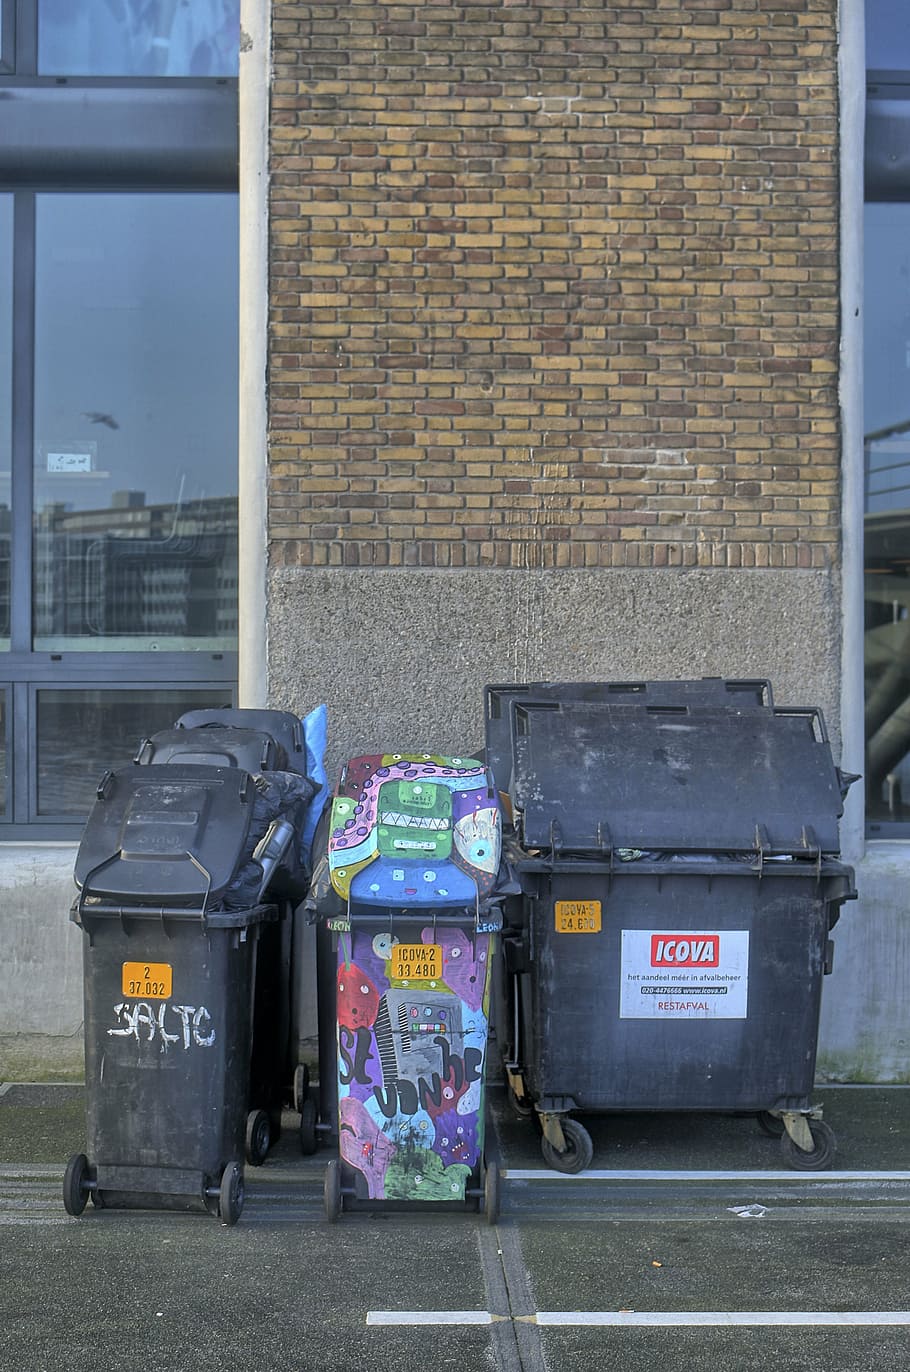 ゴミ箱, 落書き, アムステルダム, クリーニング, 廃棄物, ゴミ, リサイクル, 都市のシーン, ごみ箱, 建築